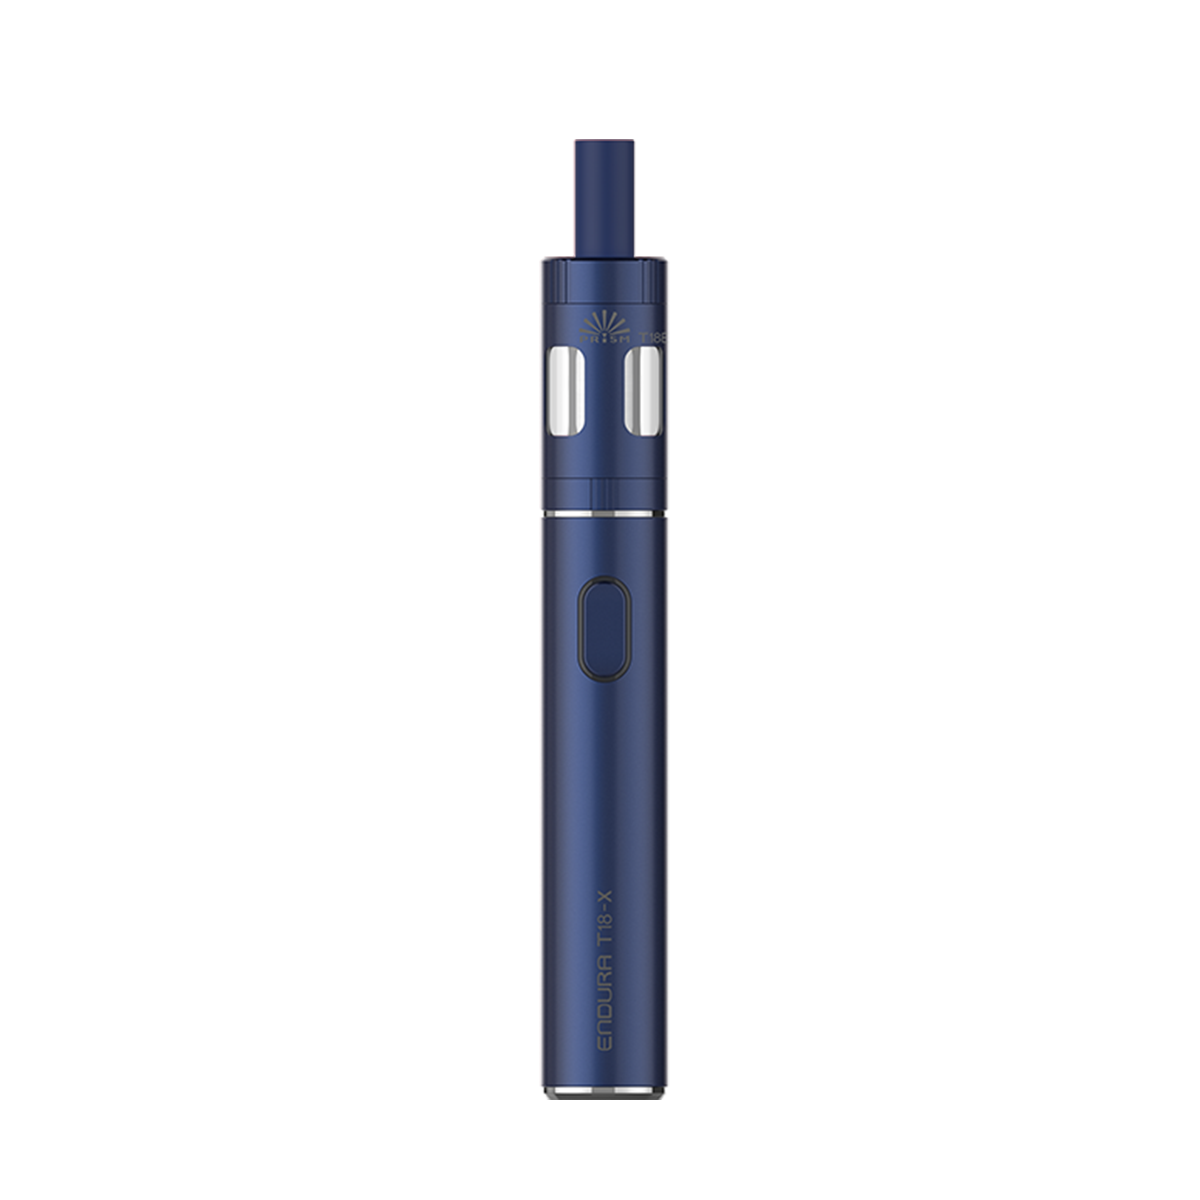 Innokin Endura T18X Vape Pen Kit Blue  